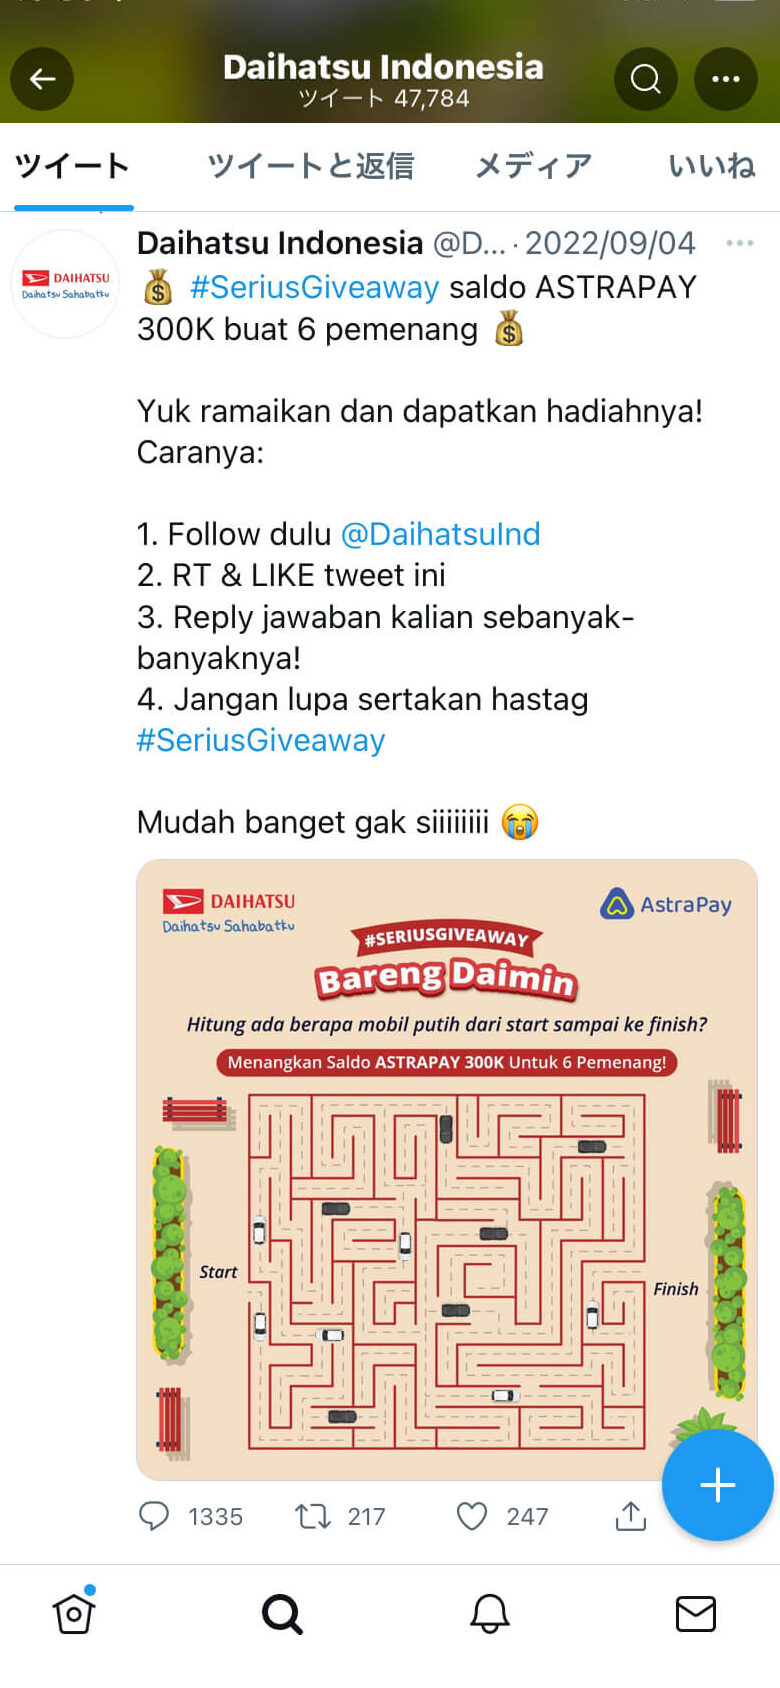 Daihastu IndonesiaのTwitter活用事例